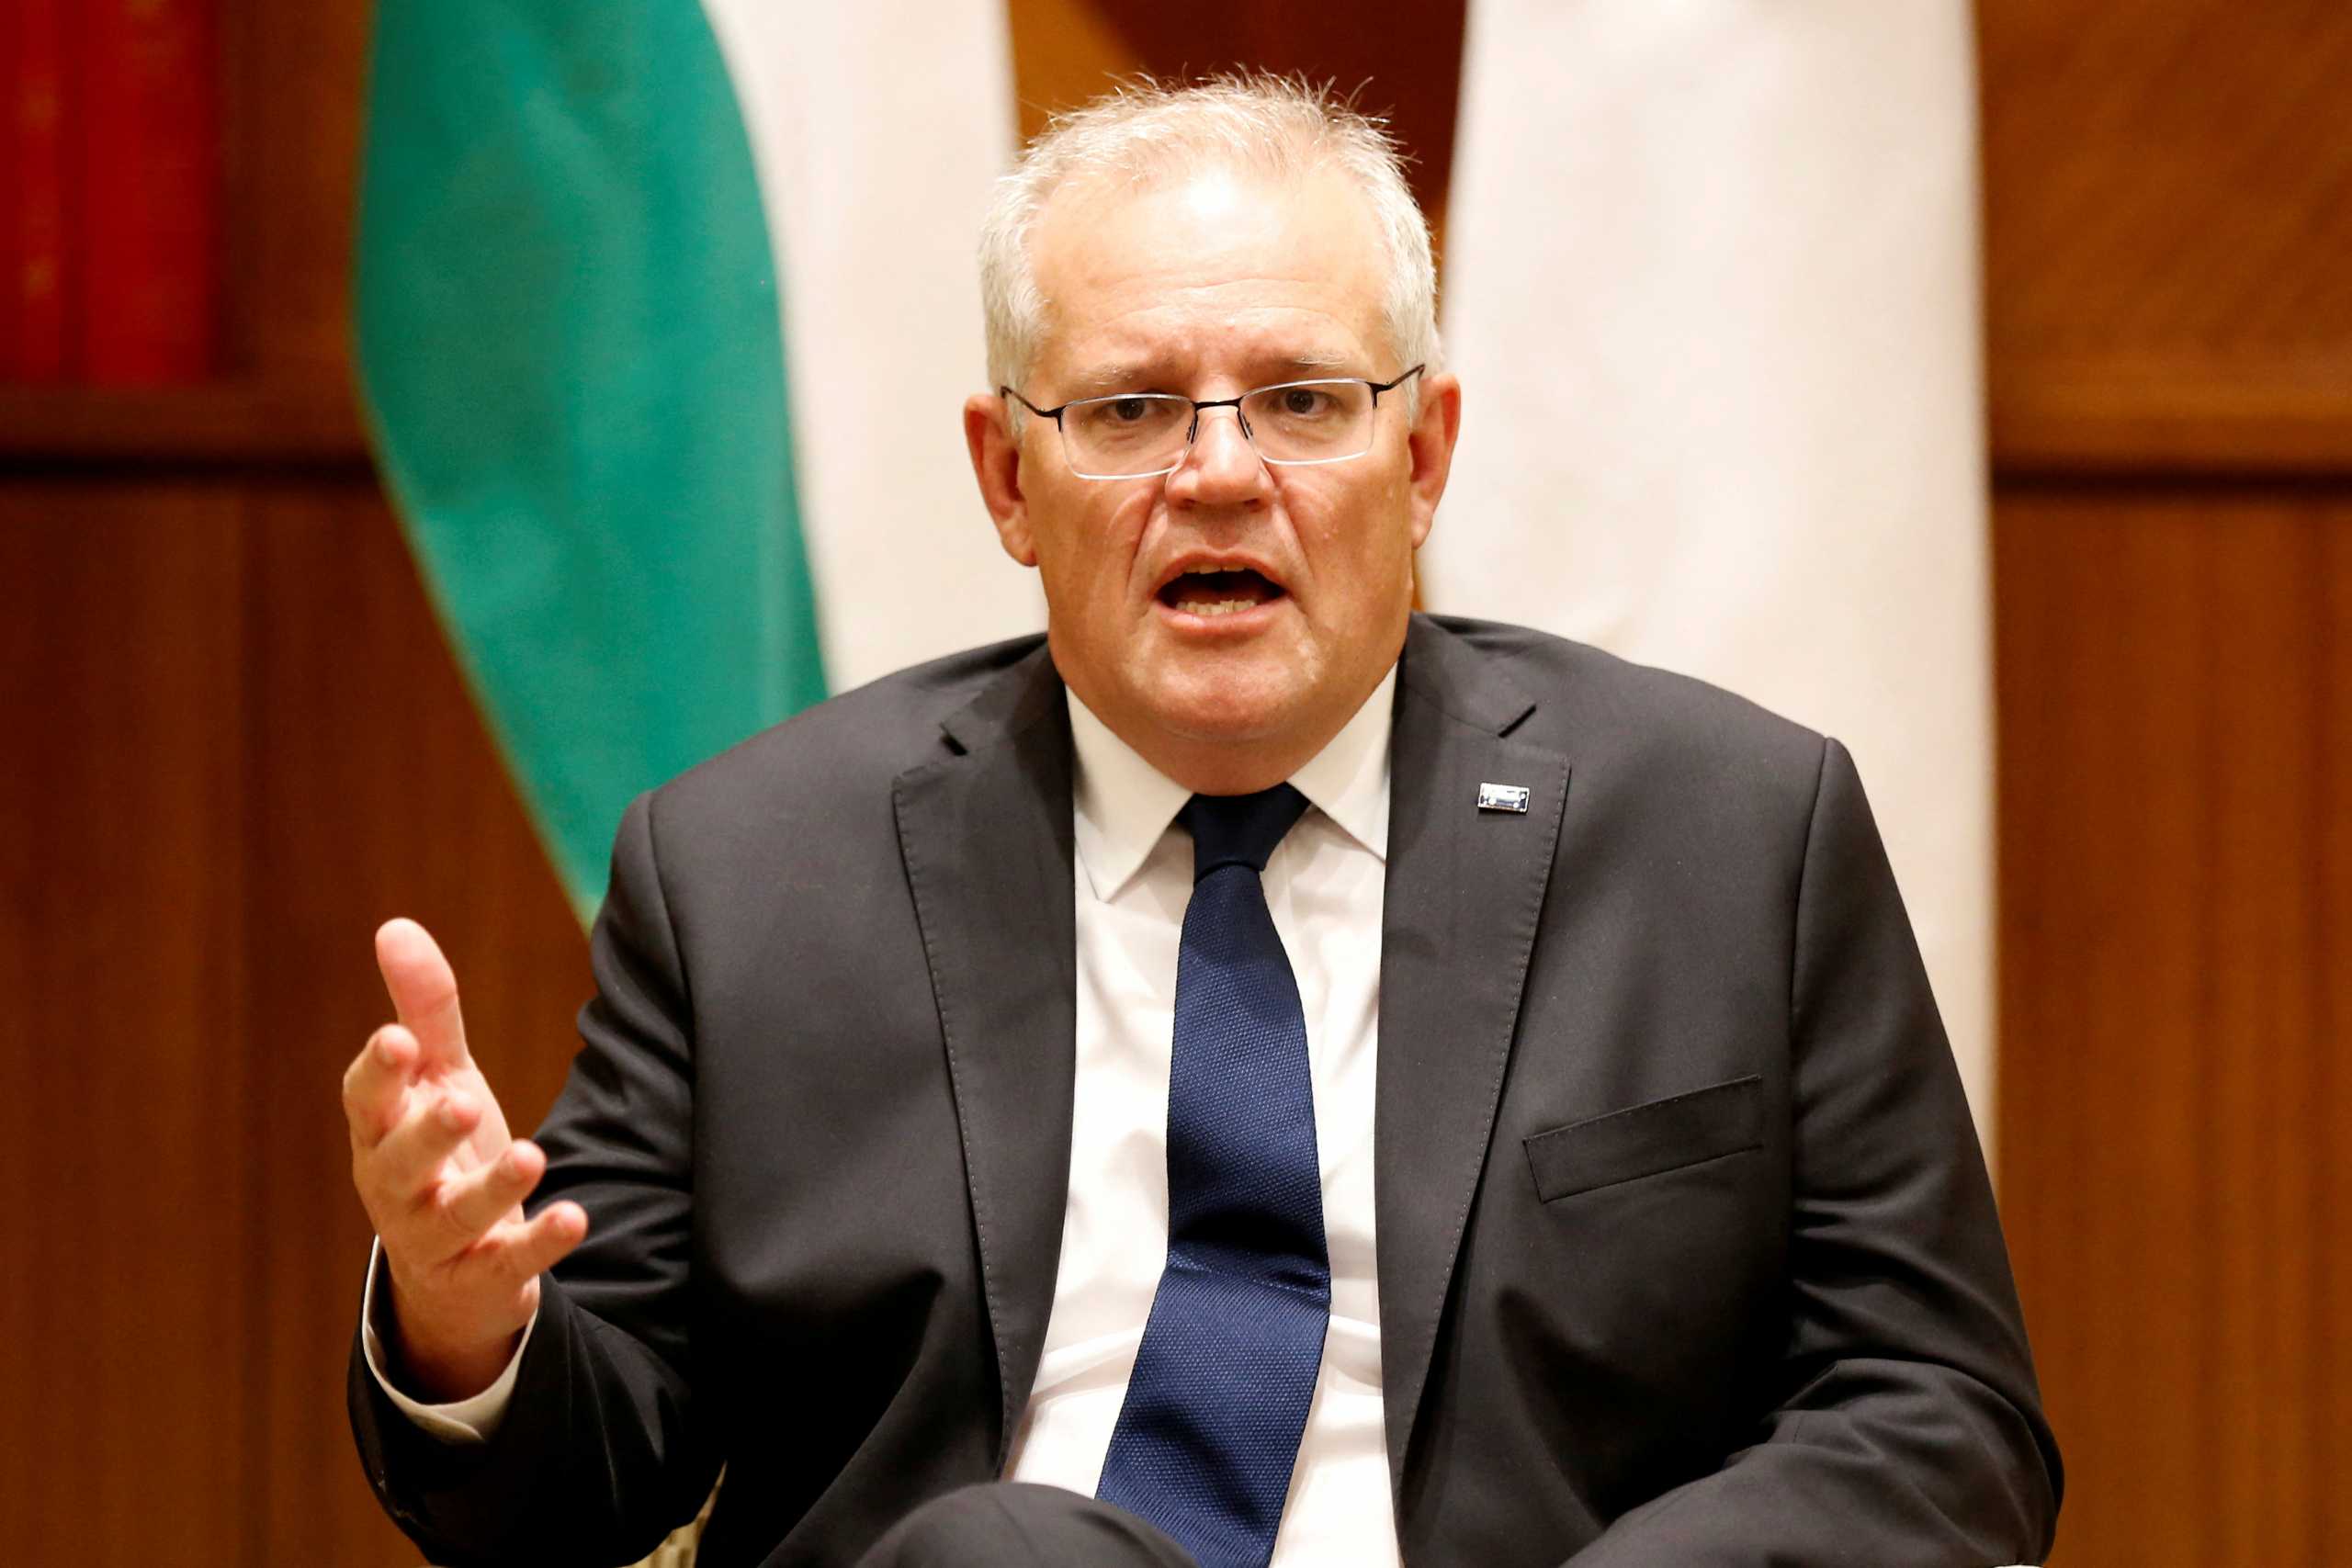 Αυστραλία: Εκλογές στις 21 Μαΐου προκήρυξε ο πρωθυπουργός Σκοτ Μόρισον